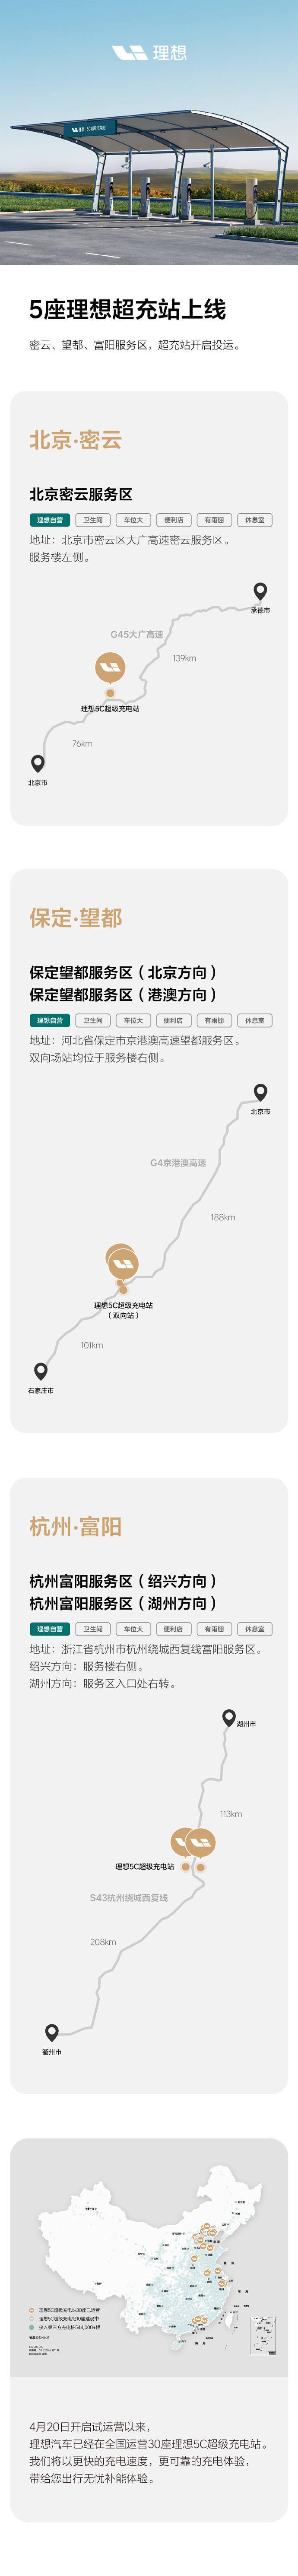 理想汽车新增5座超充站 分别位于北京密云、保定望都和杭州富阳服务区